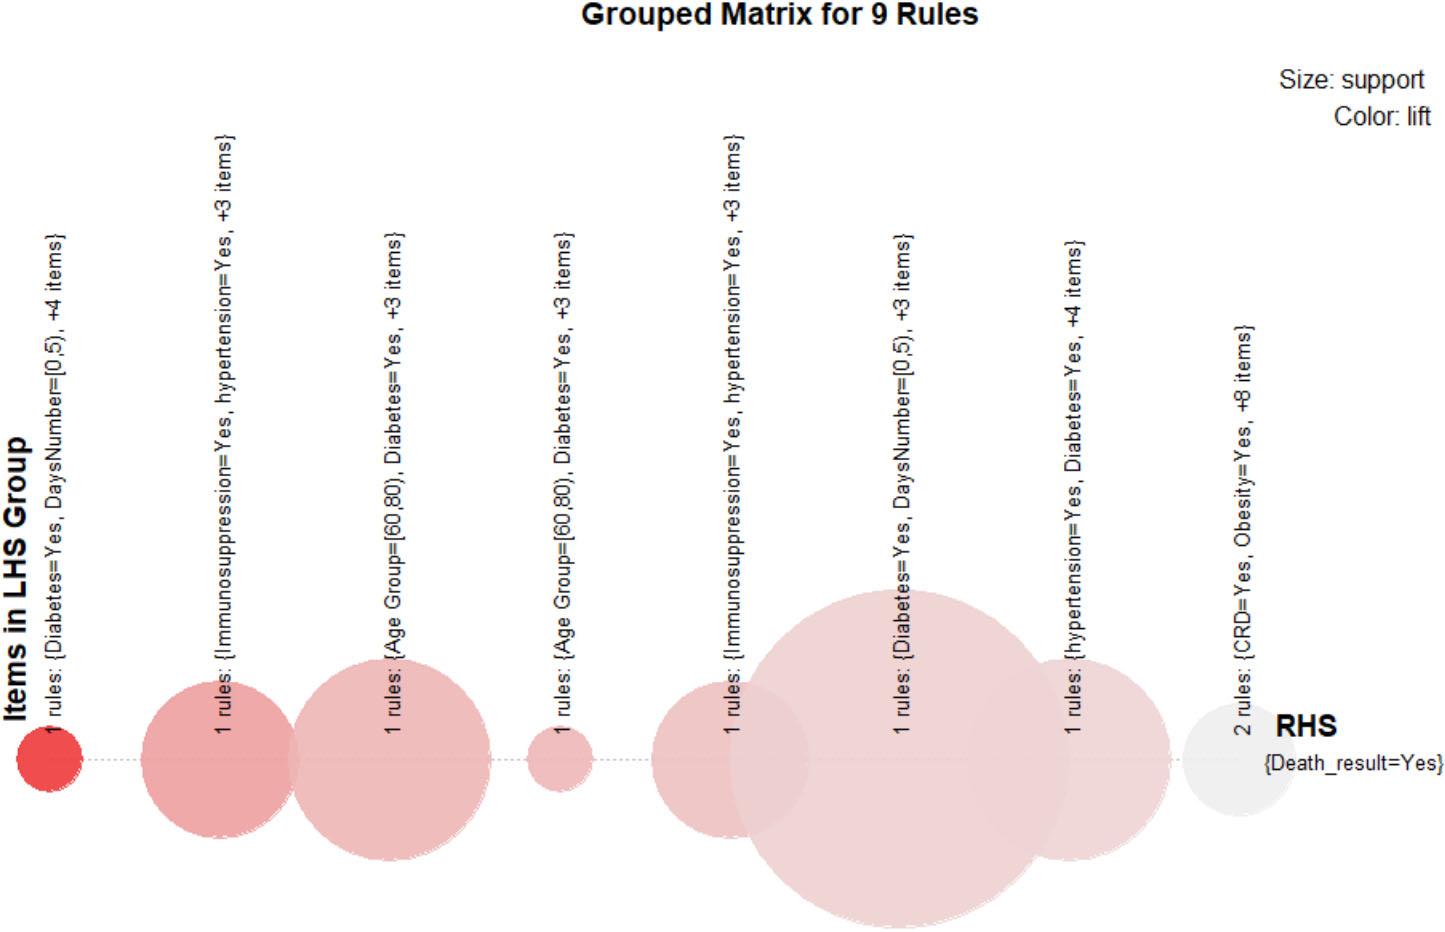 Grouped matrix visualization.